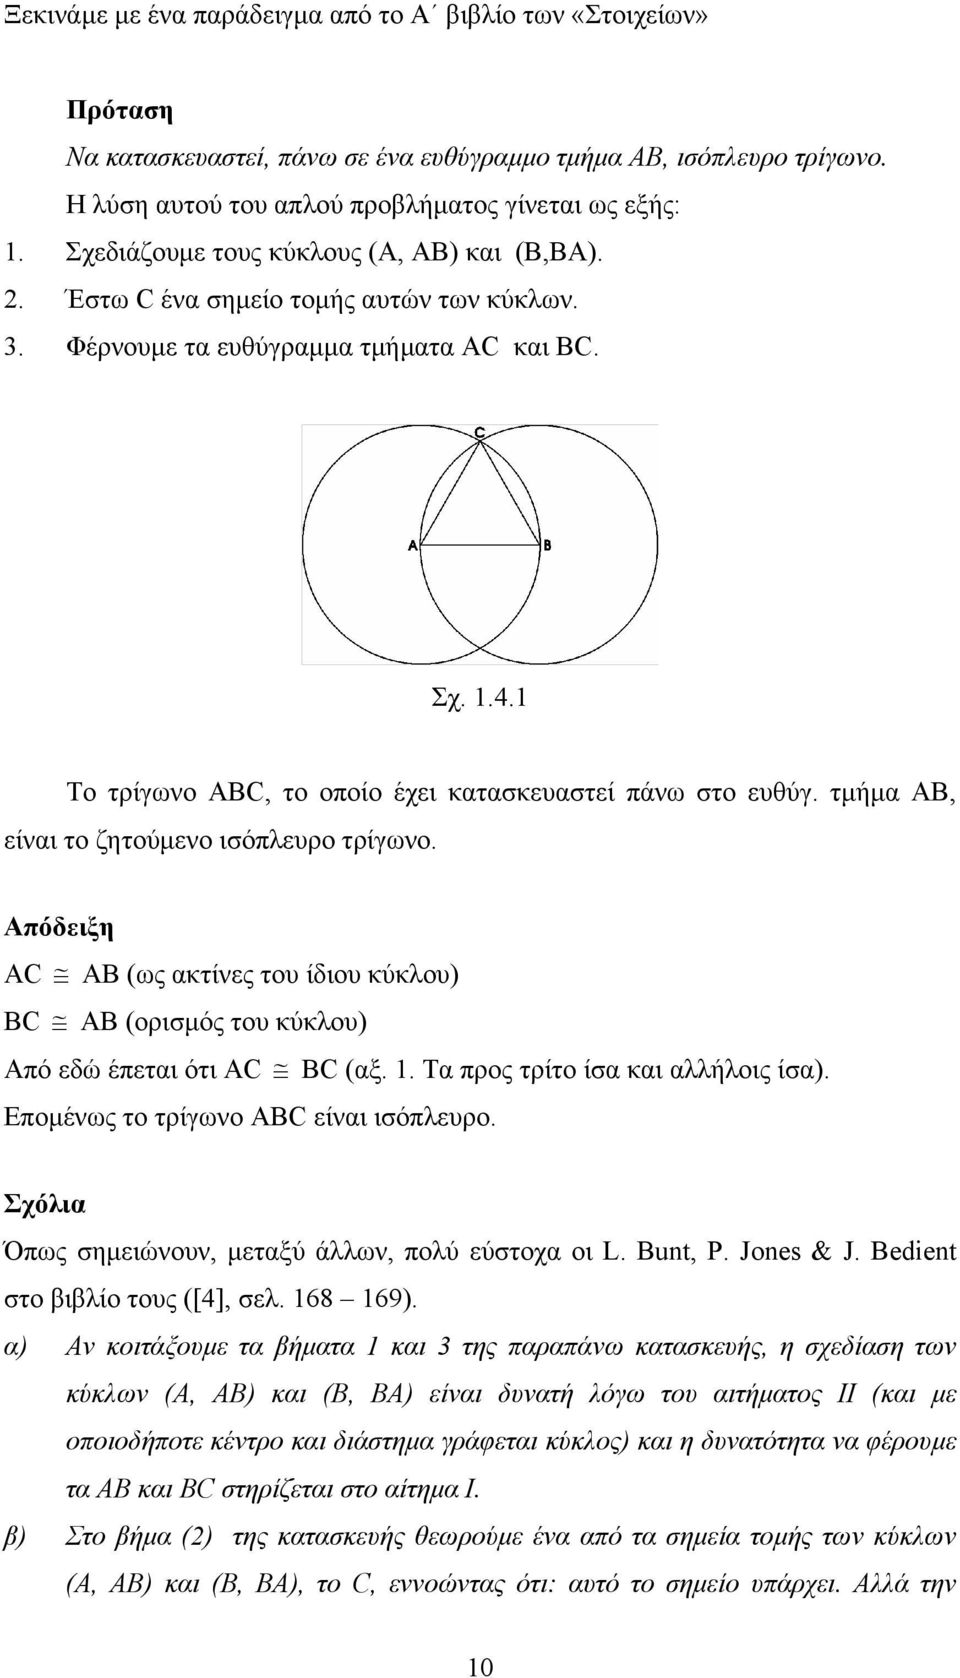 τµήµ ΑΒ, είνι το ζητούµενο ισόπλευρο τρίγωνο. Απόδειξη AC AB (ως κτίνες του ίδιου κύκλου) BC AB (ορισµός του κύκλου) Από εδώ έπετι ότι AC BC (ξ.. Τ προς τρίτο ίσ κι λλήλοις ίσ).